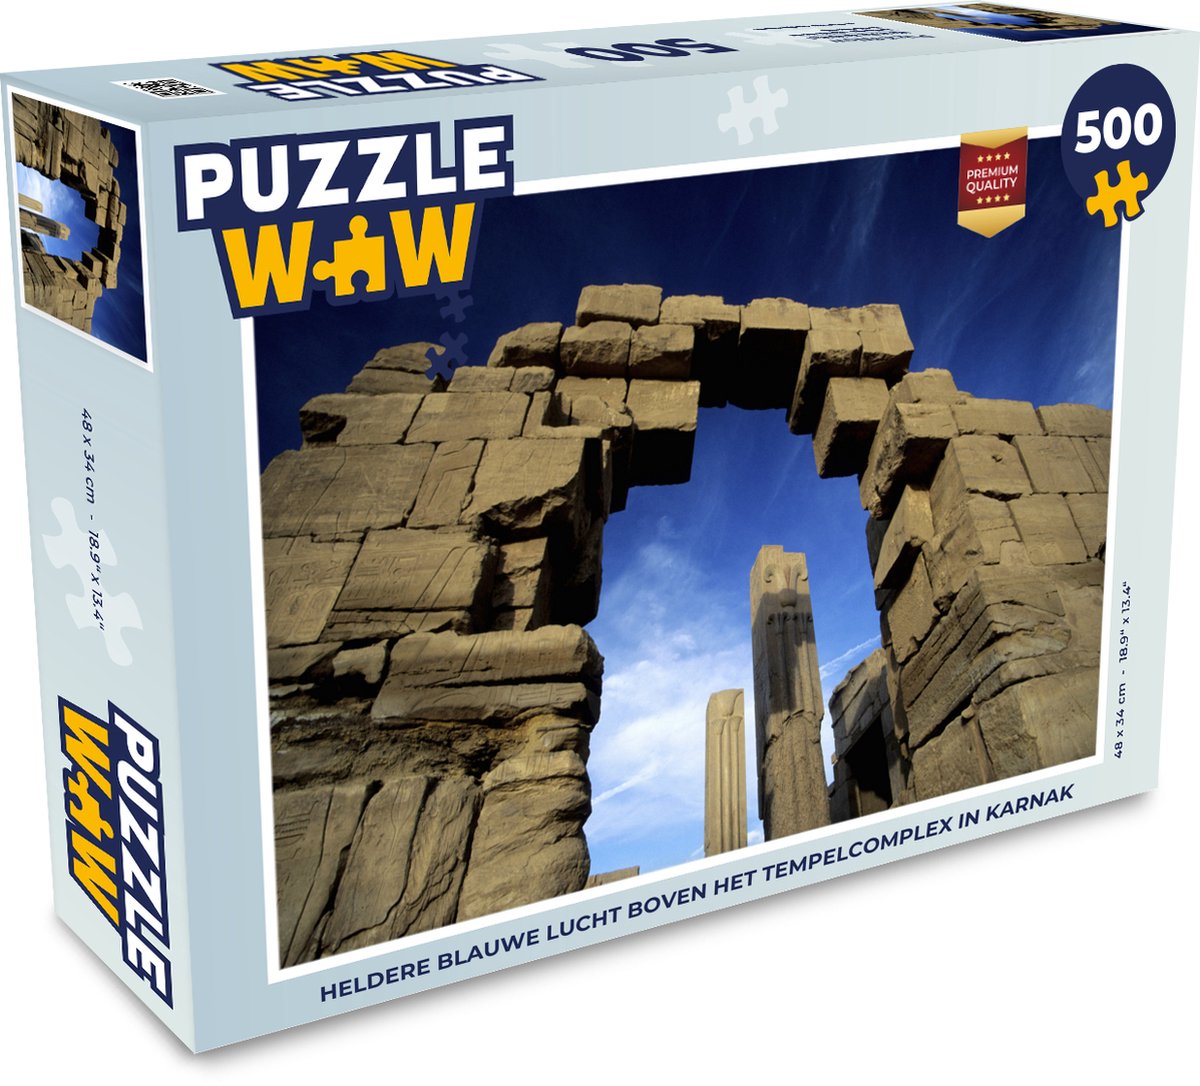 Afbeelding van product Puzzel 500 stukjes Karnak - Heldere blauwe lucht boven het tempelcomplex in Karnak - PuzzleWow heeft +100000 puzzels